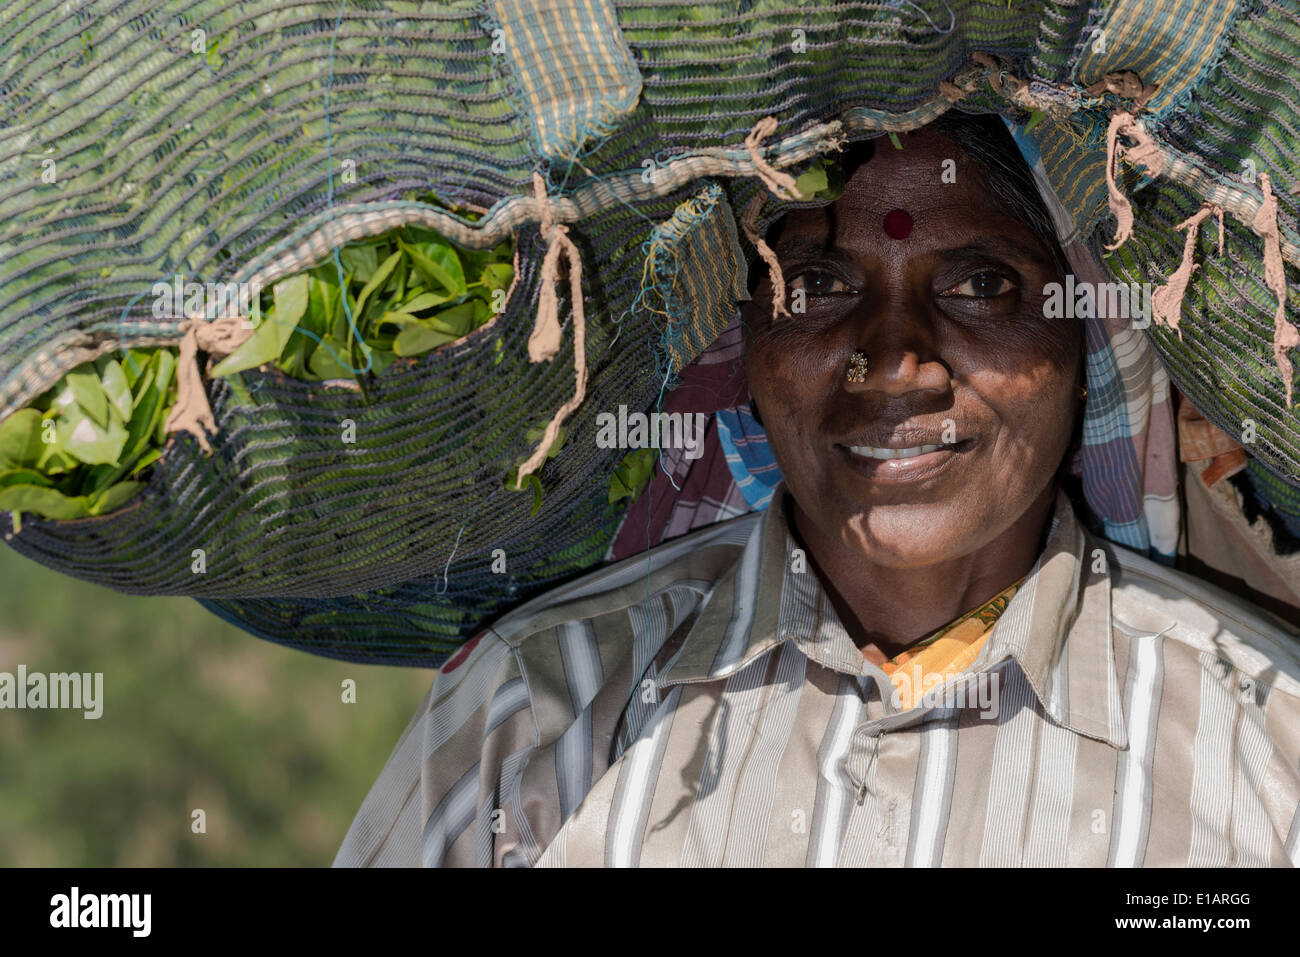 Retrato de una mujer té plucker llevar una bolsa grande de hojas de té en su cabeza, Munnar, Kerala, India Foto de stock